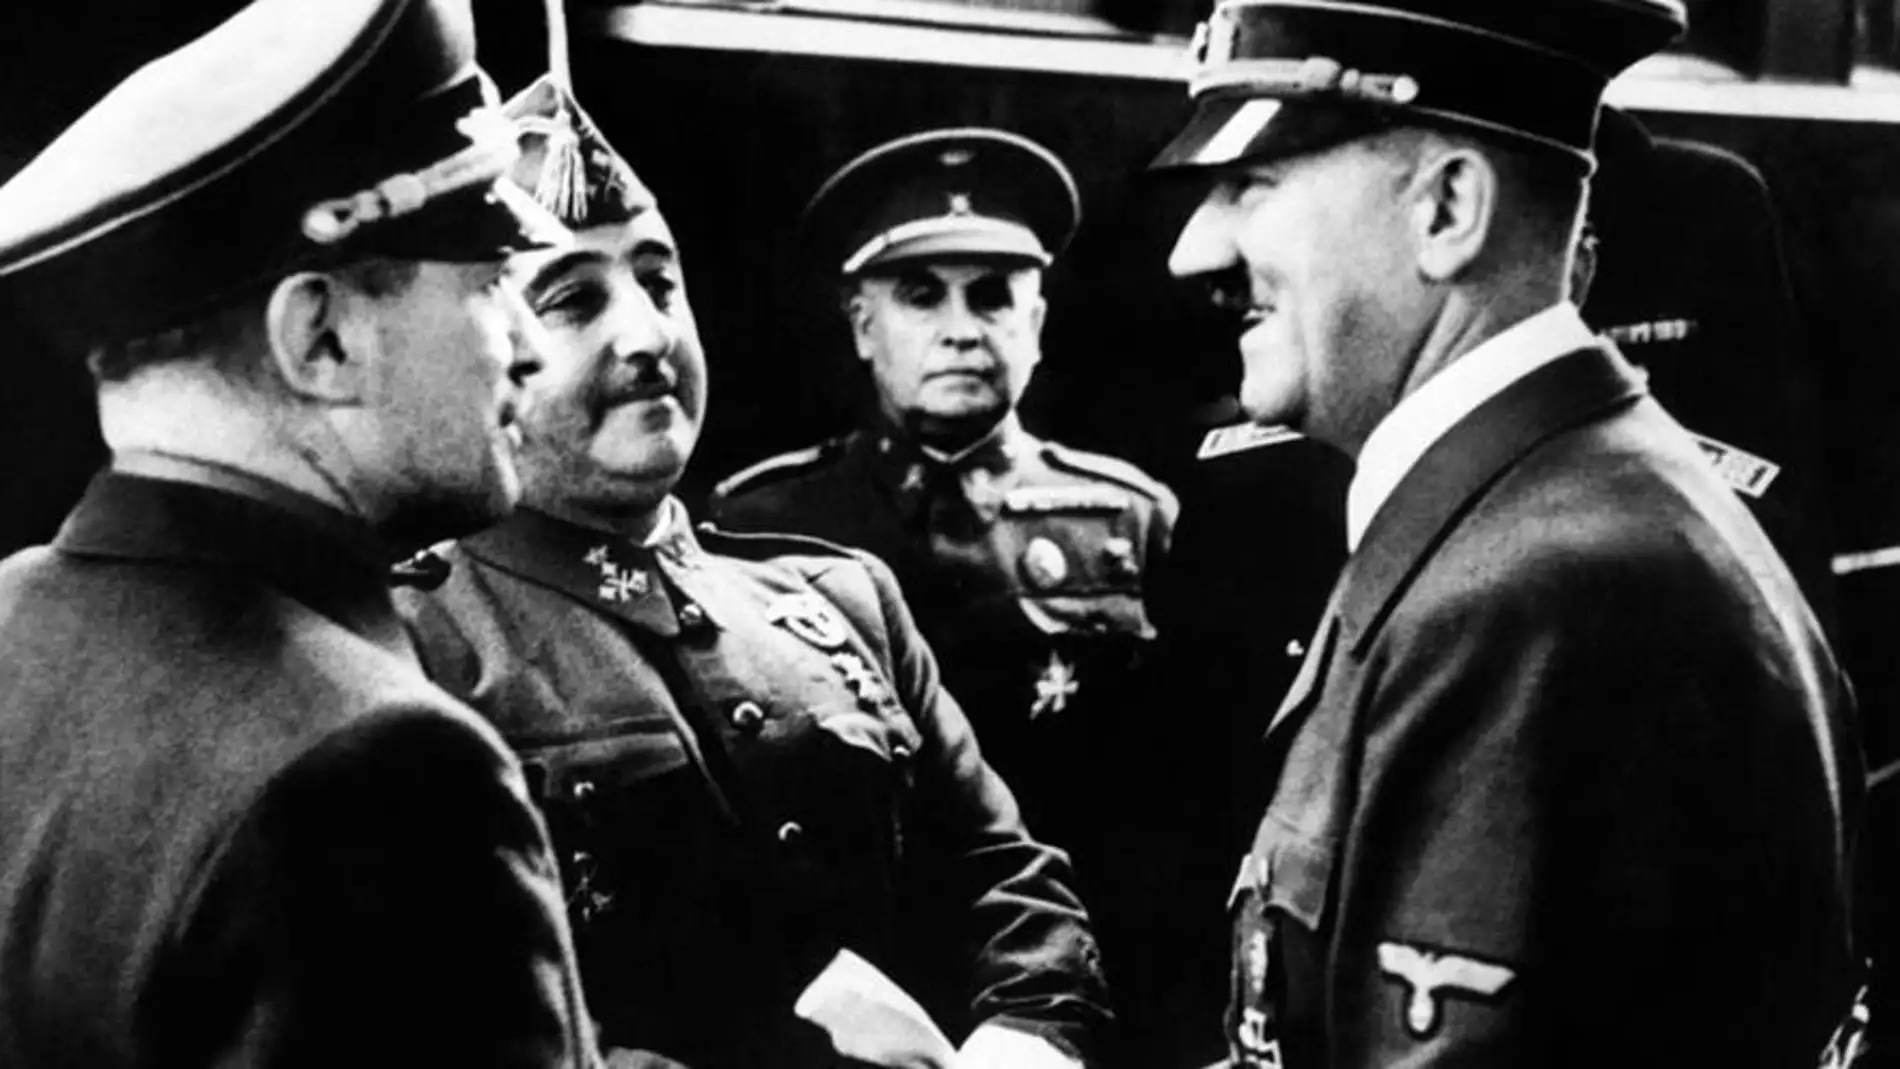  Cambio de hora: ¿Modificó Franco el huso horario español para contentar a Hitler?